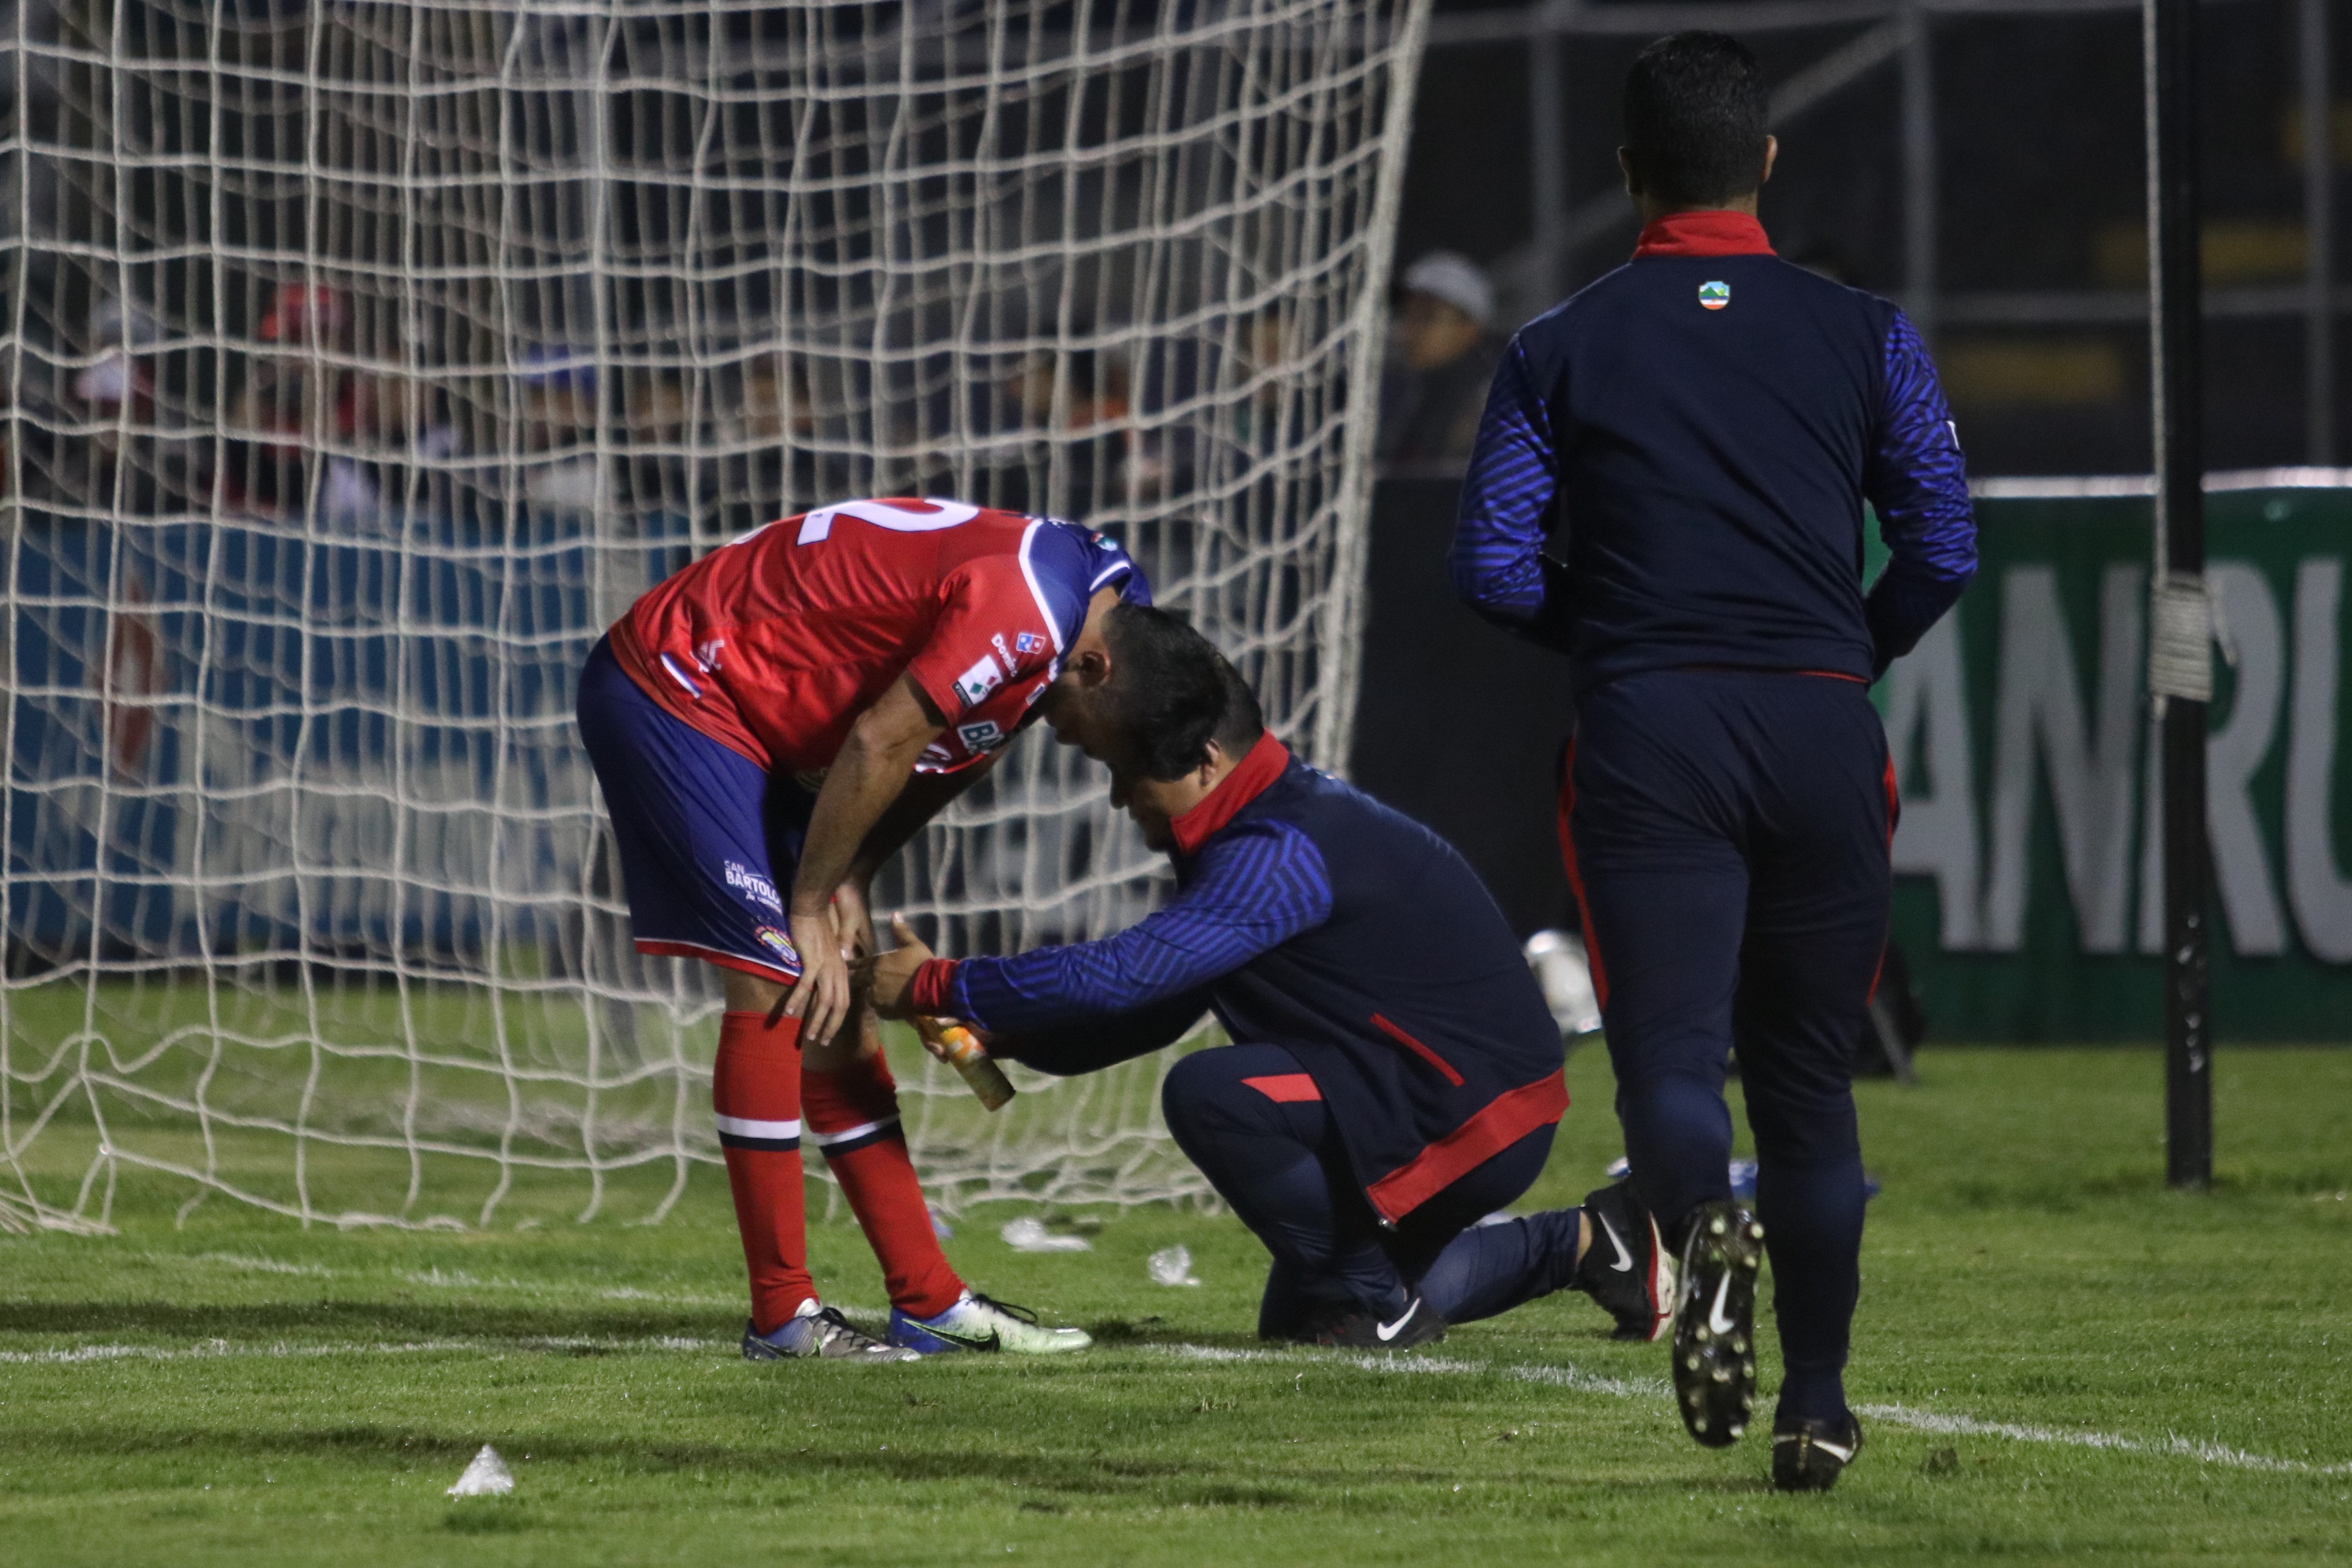 El delantero Carlos Kamiani se resintió luego de una jugada en el partido ante Guastatoya. (Foto Prensa Libre: Raúl Juárez)